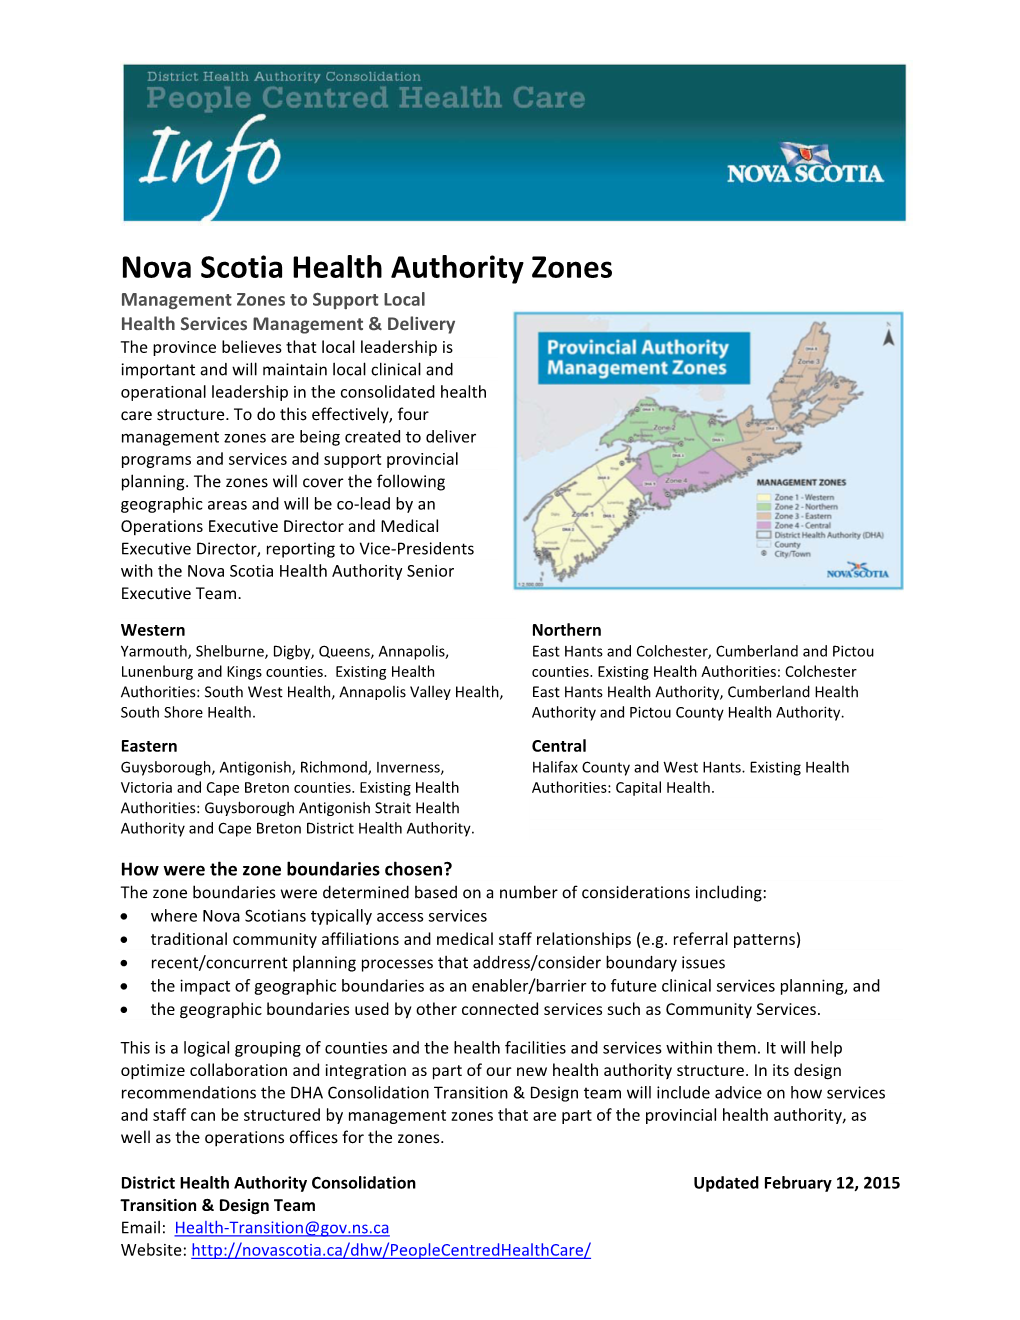 Nova Scotia Health Authority Zones